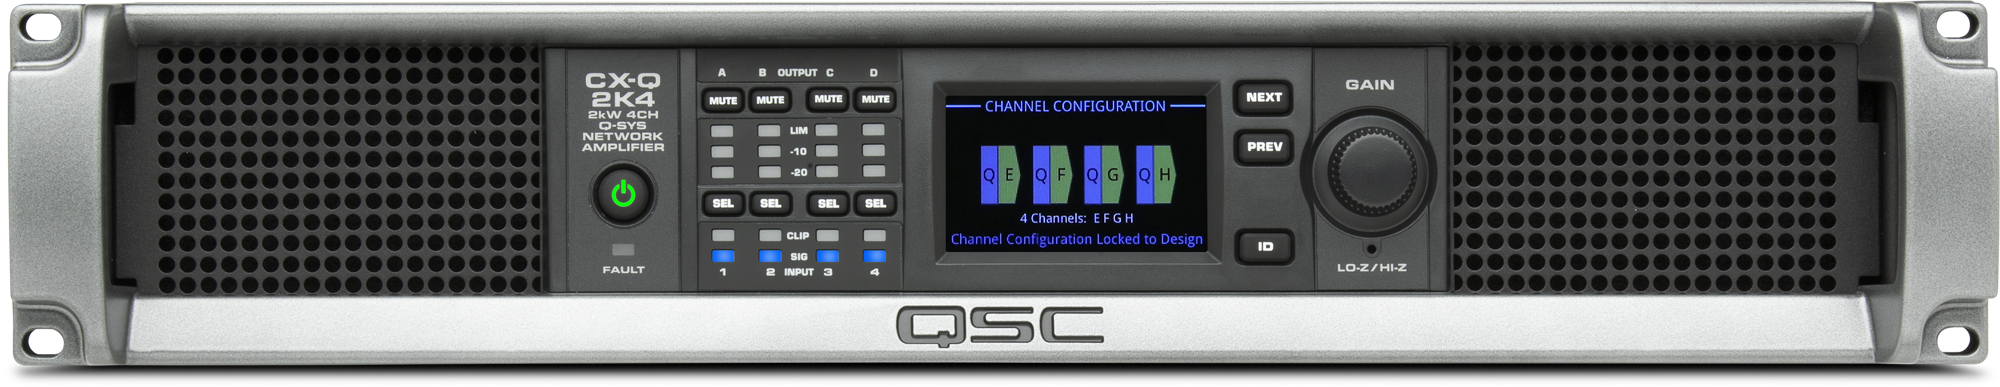 CX-Qn 2K4 / 4-канальный усилитель 4 х 500Вт Q-SYS, Lo-Z, 70В, 100В, FlexAmp™ / QSC